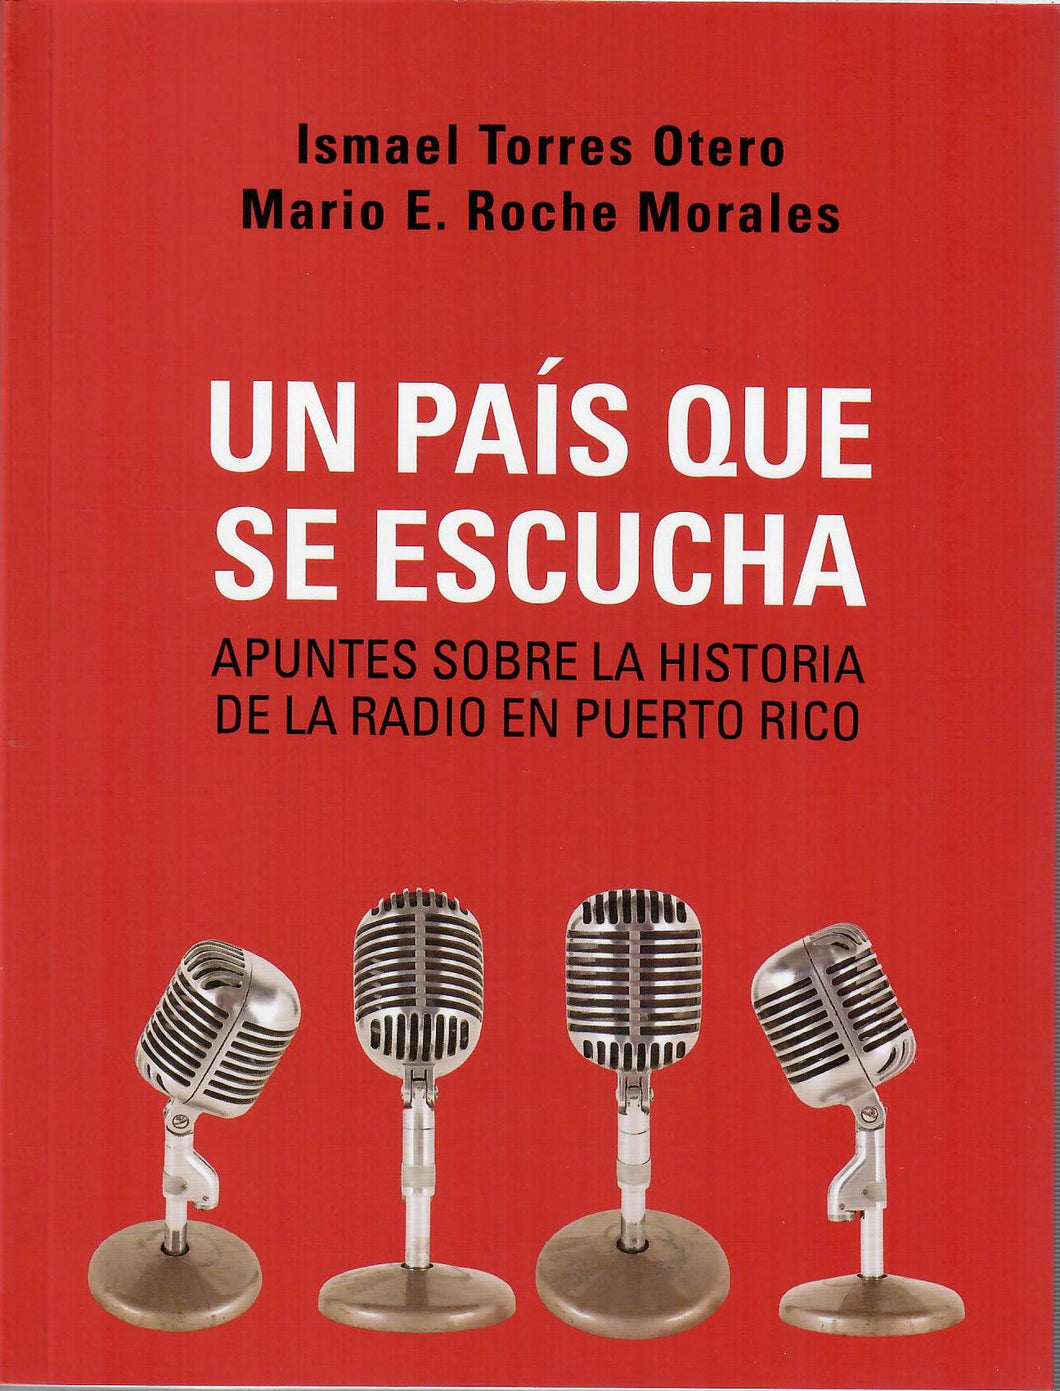 UN PAIS QUE SE ESCUCHA: APUNTES SOBRE LA HISTORIA DE LA RADIO EN PUERTO RICO - Ismael Torres Otero y Mario E. Roche Morales